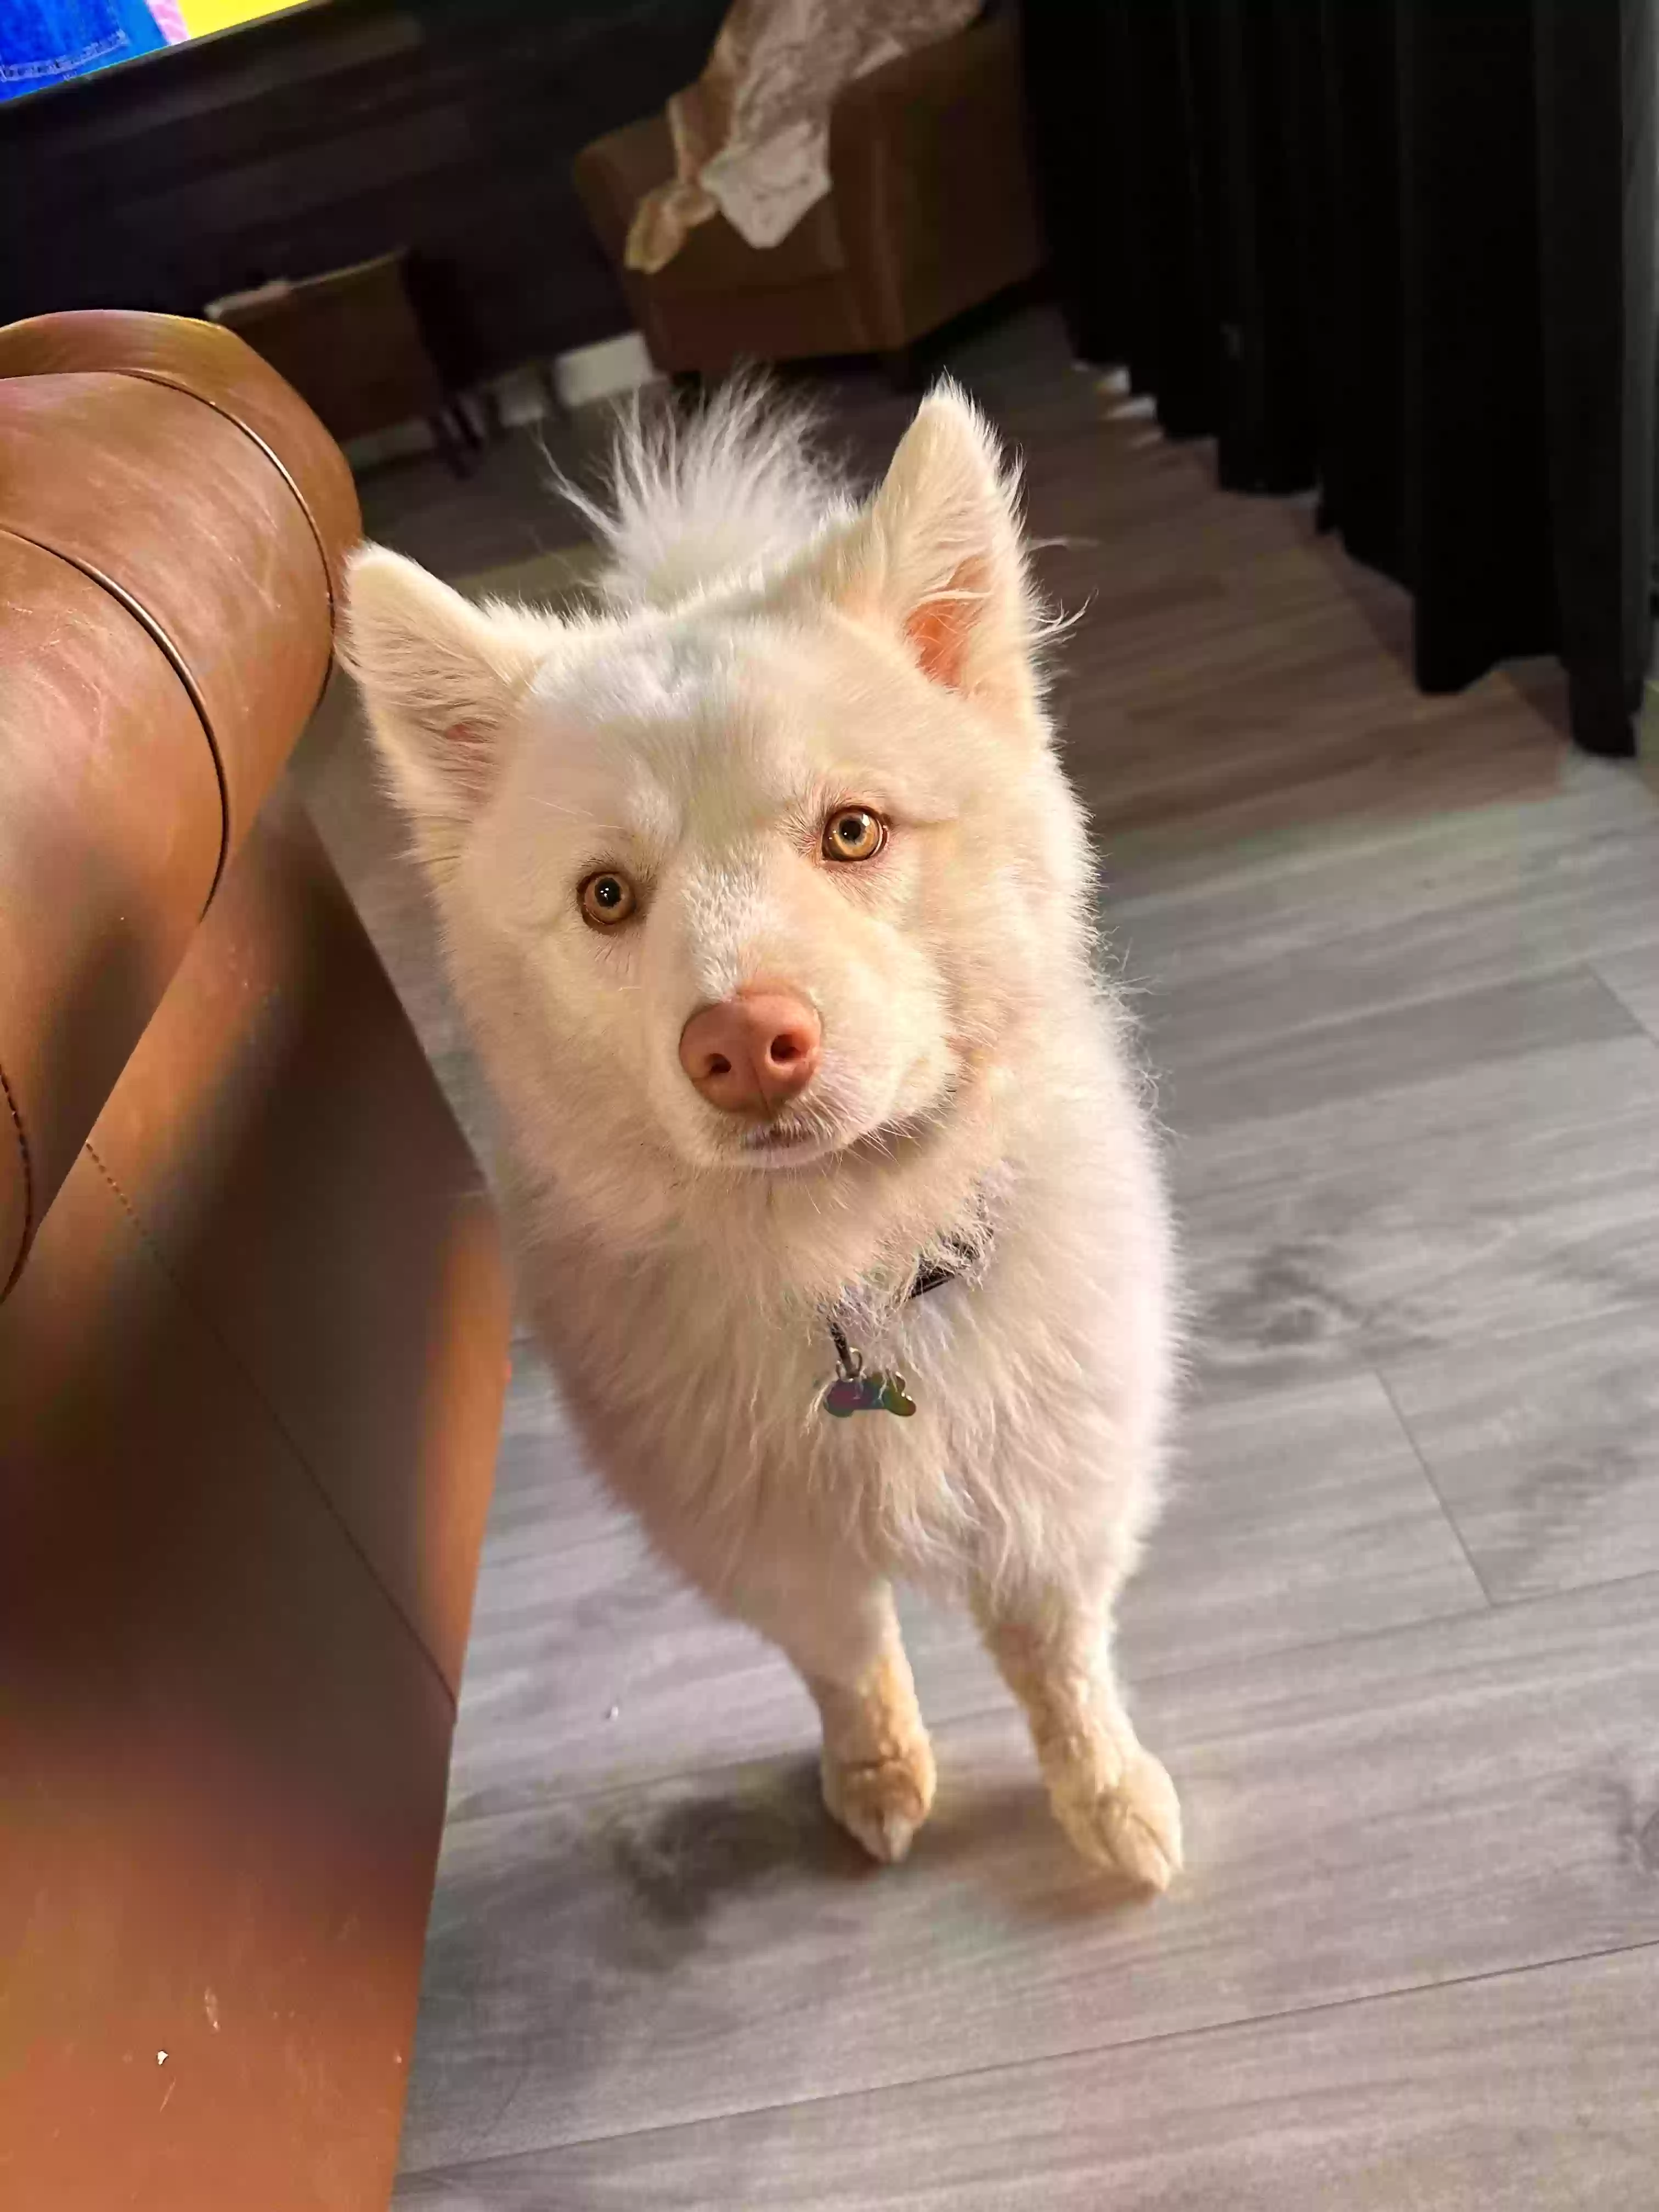 adoptable Dog in Las Vegas,NV named Yeti